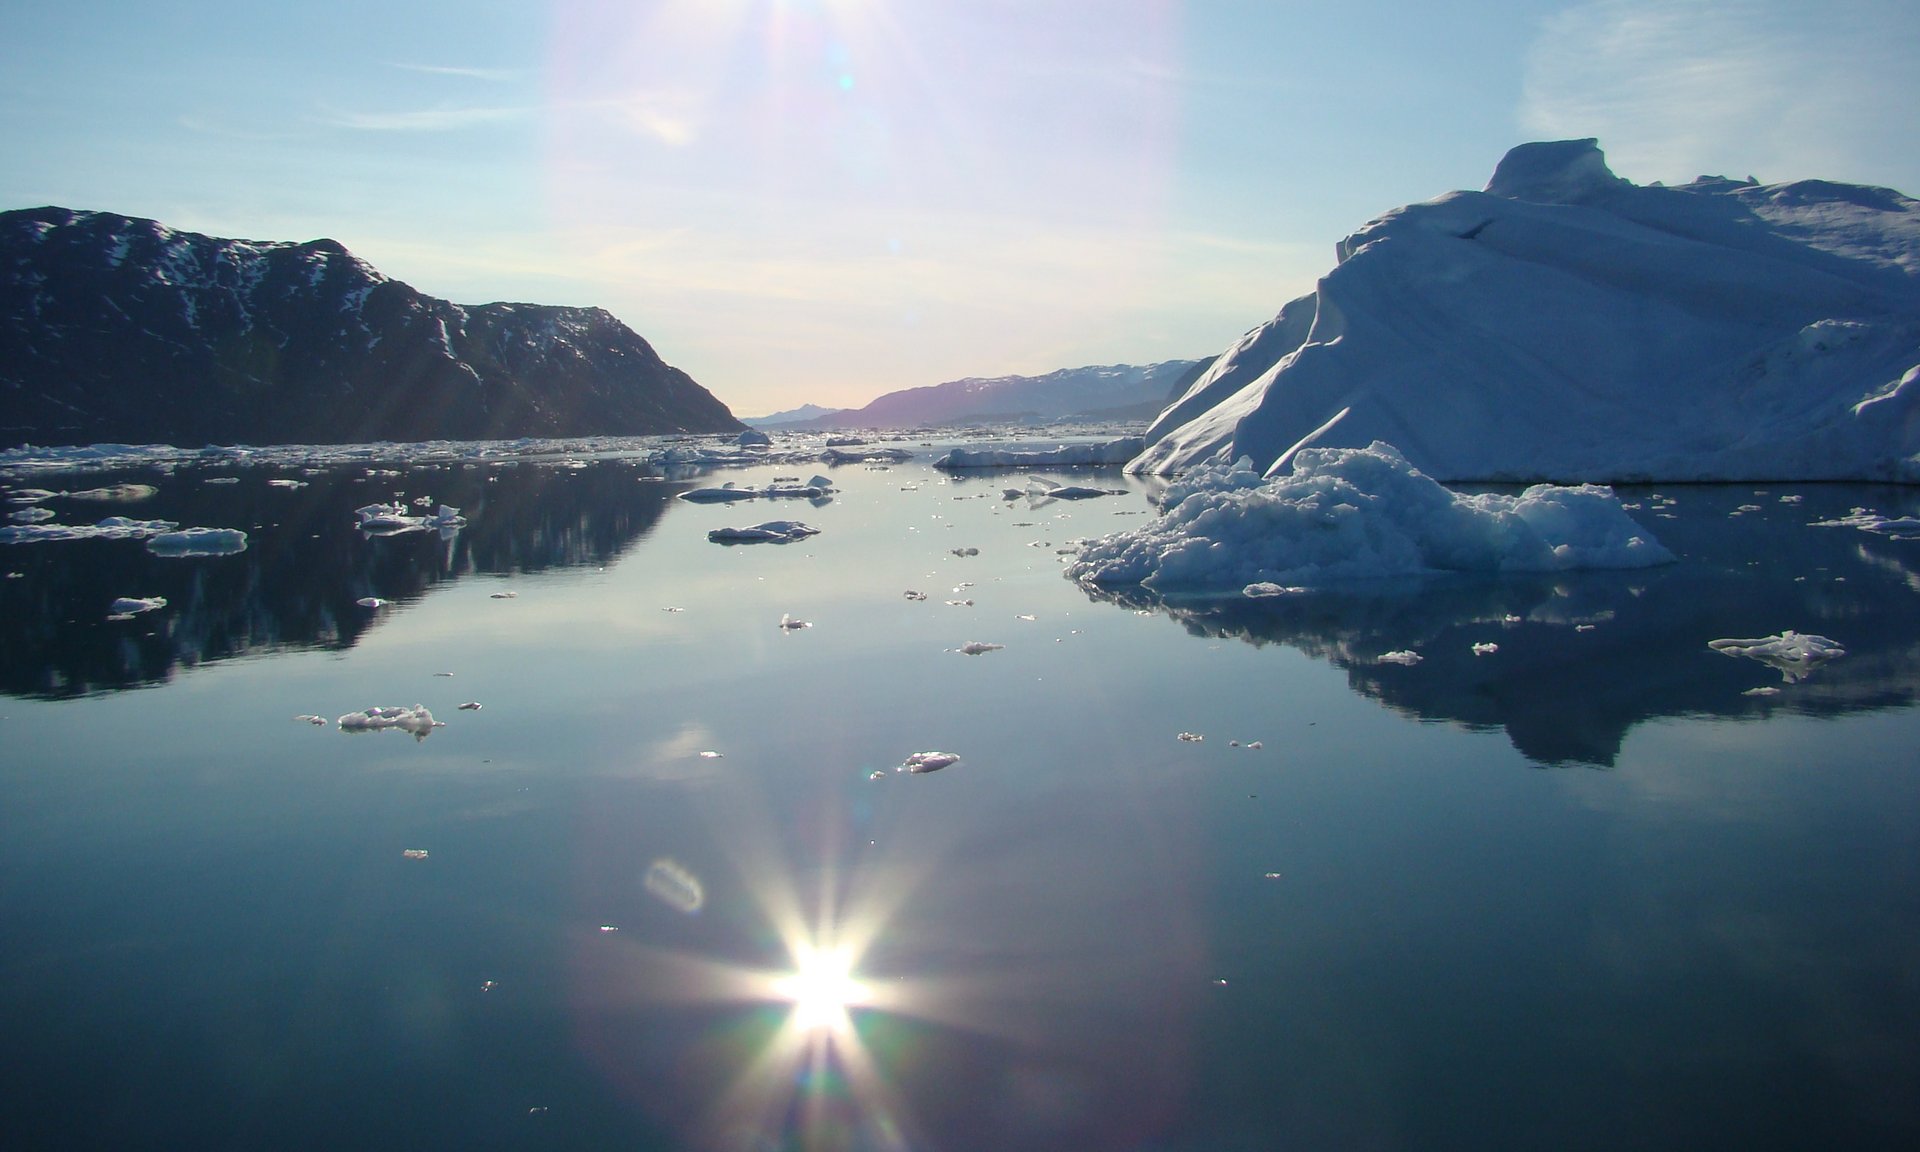 Fjord in Grönland bei Sonnenlicht